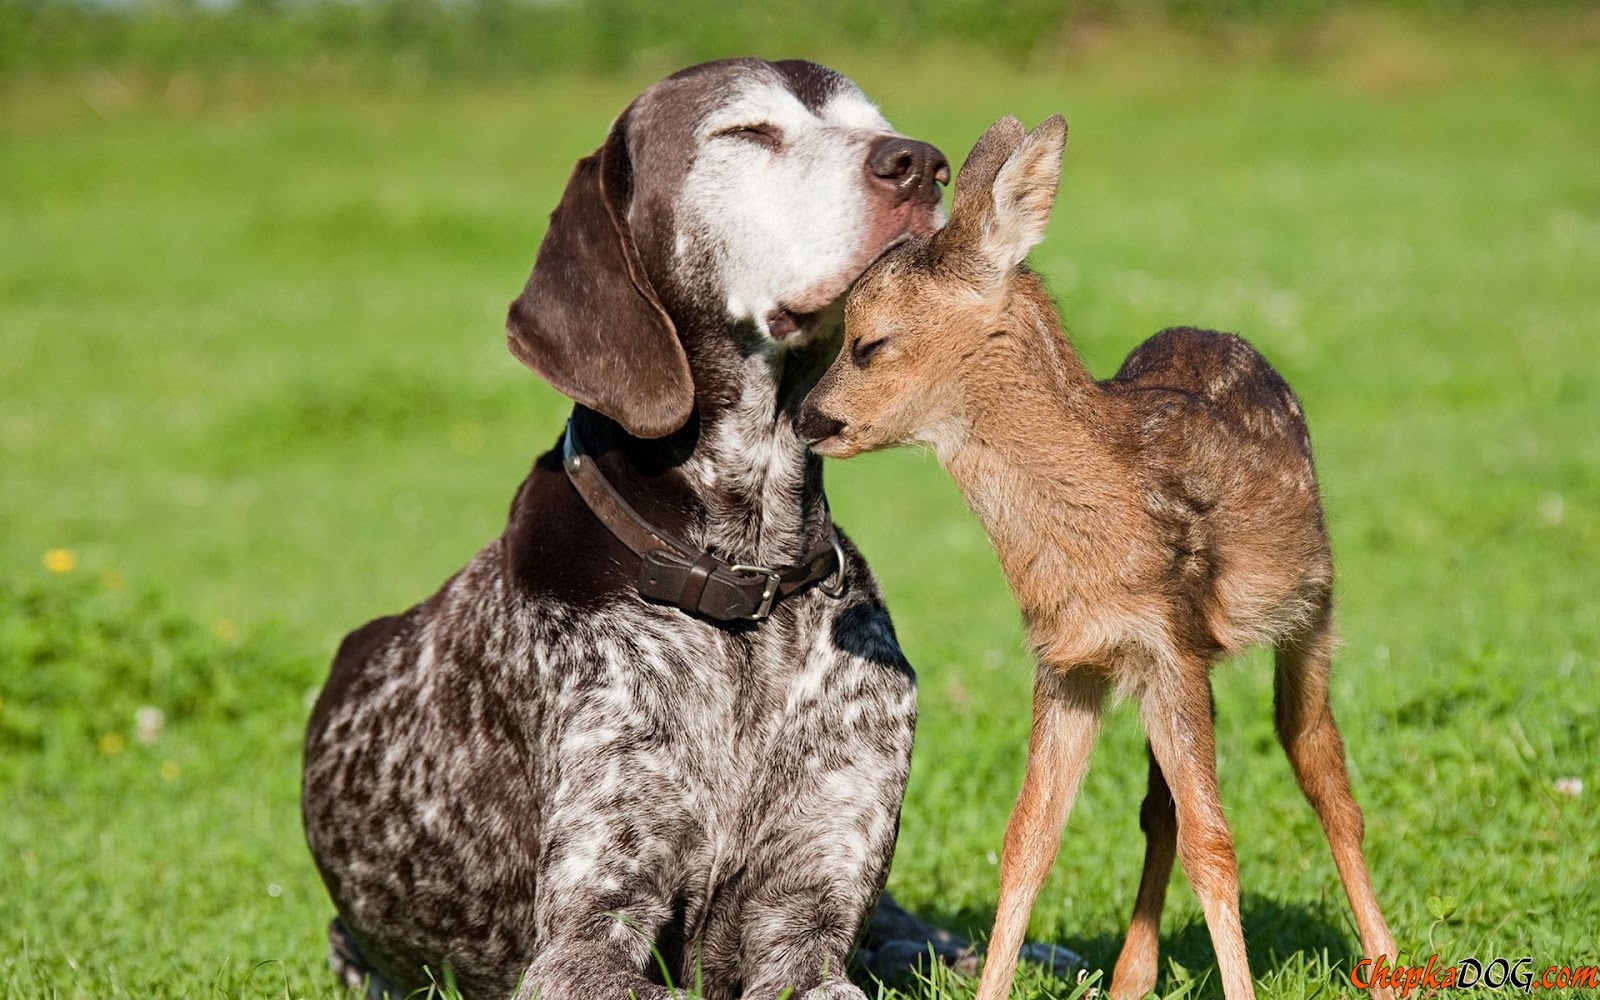 Dog and Deer